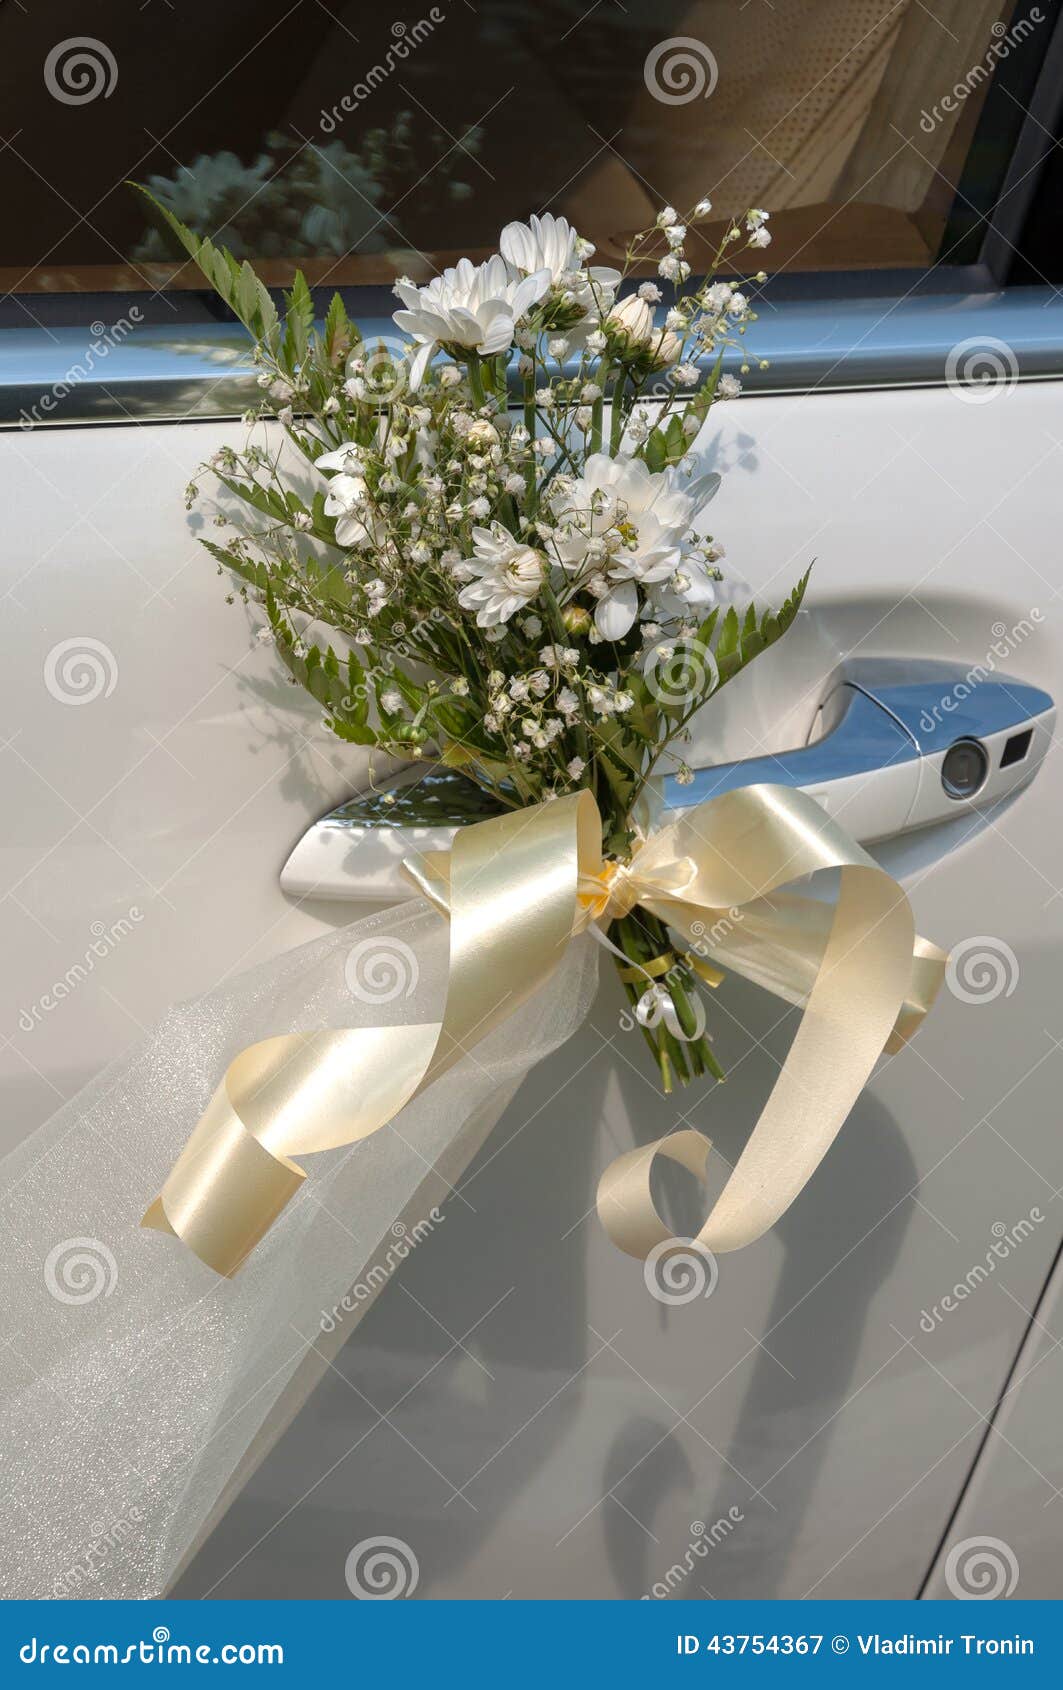 Wedding car decoration stock image. Image of automobile - 43754367